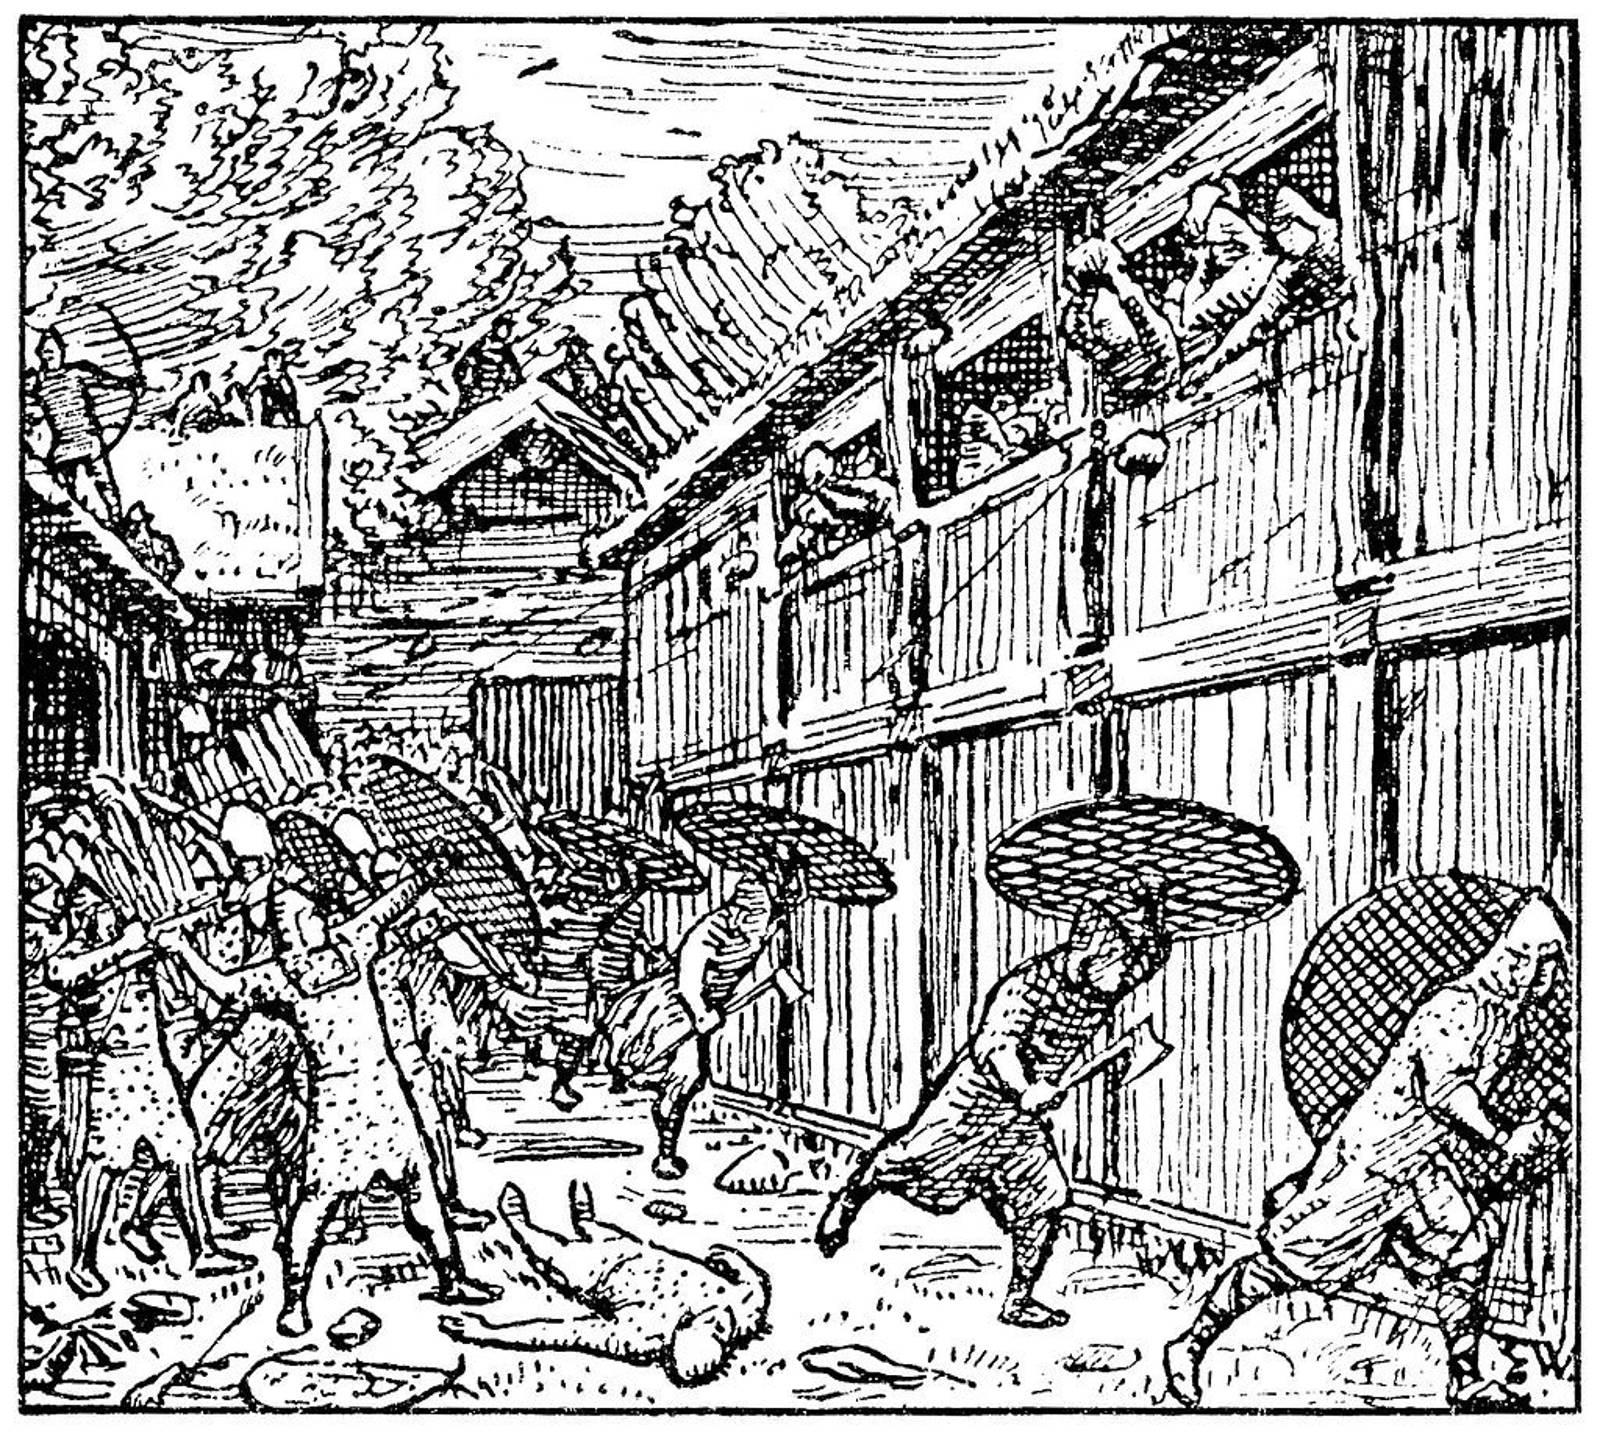 Slik så illustratøren Eirik Werenskiold for seg birkebeinerne i kamp, scenen er hentet fra Snorres saga om Magnus Erlingsson.